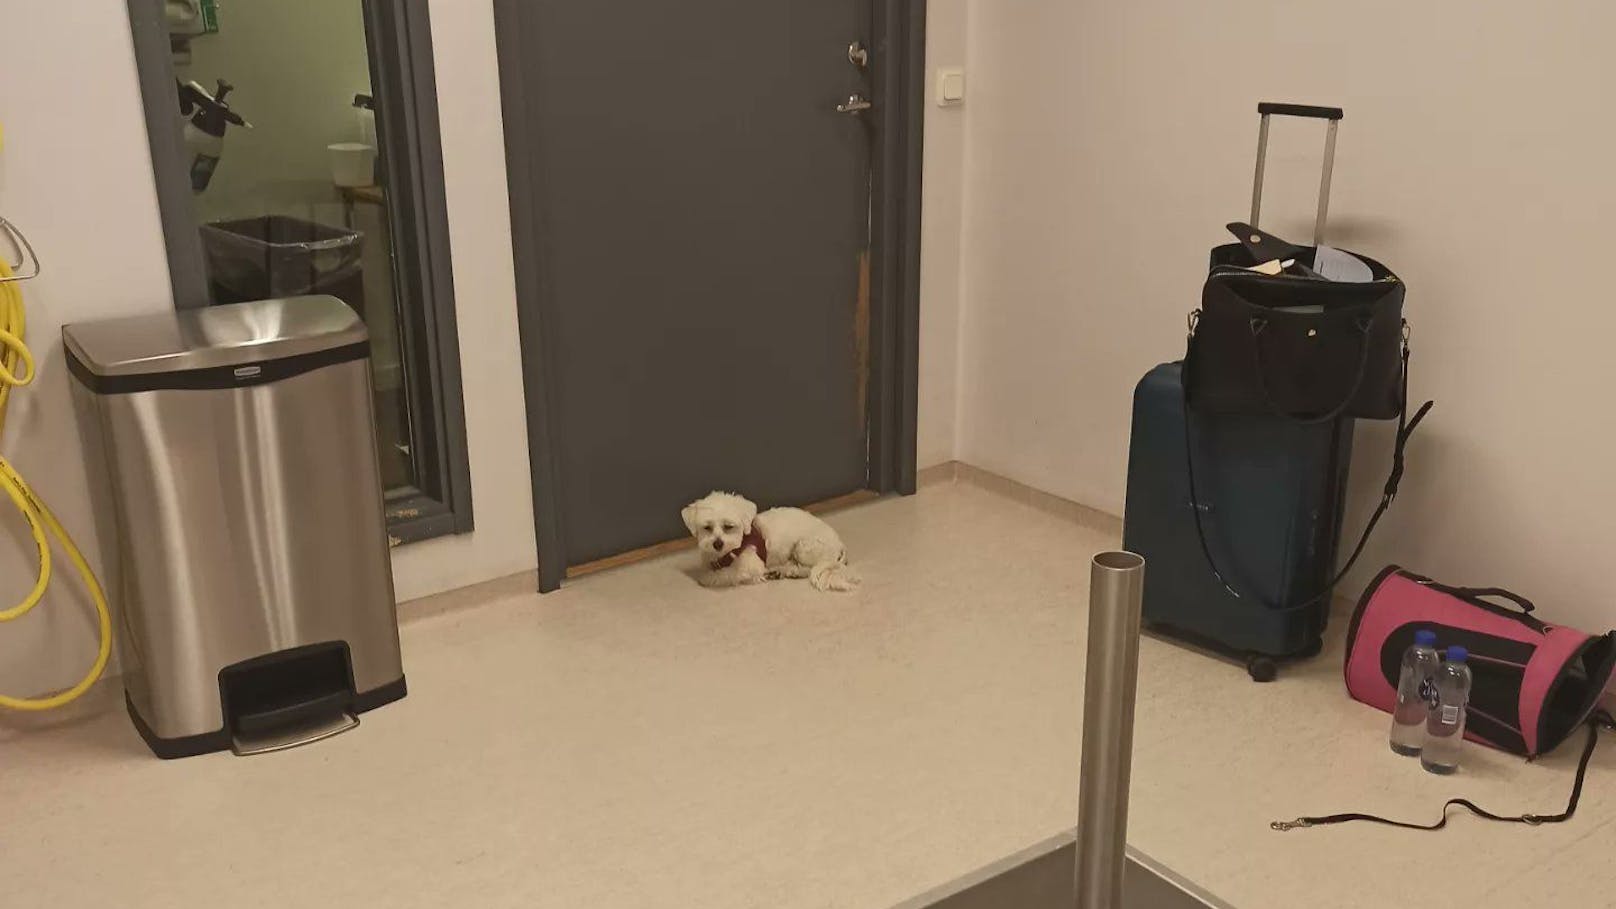 Malteser-Rüde "Nalle" in Quarantäne am Flughafen von Stockholm – sichtlich verängstigt und verzweifelt.